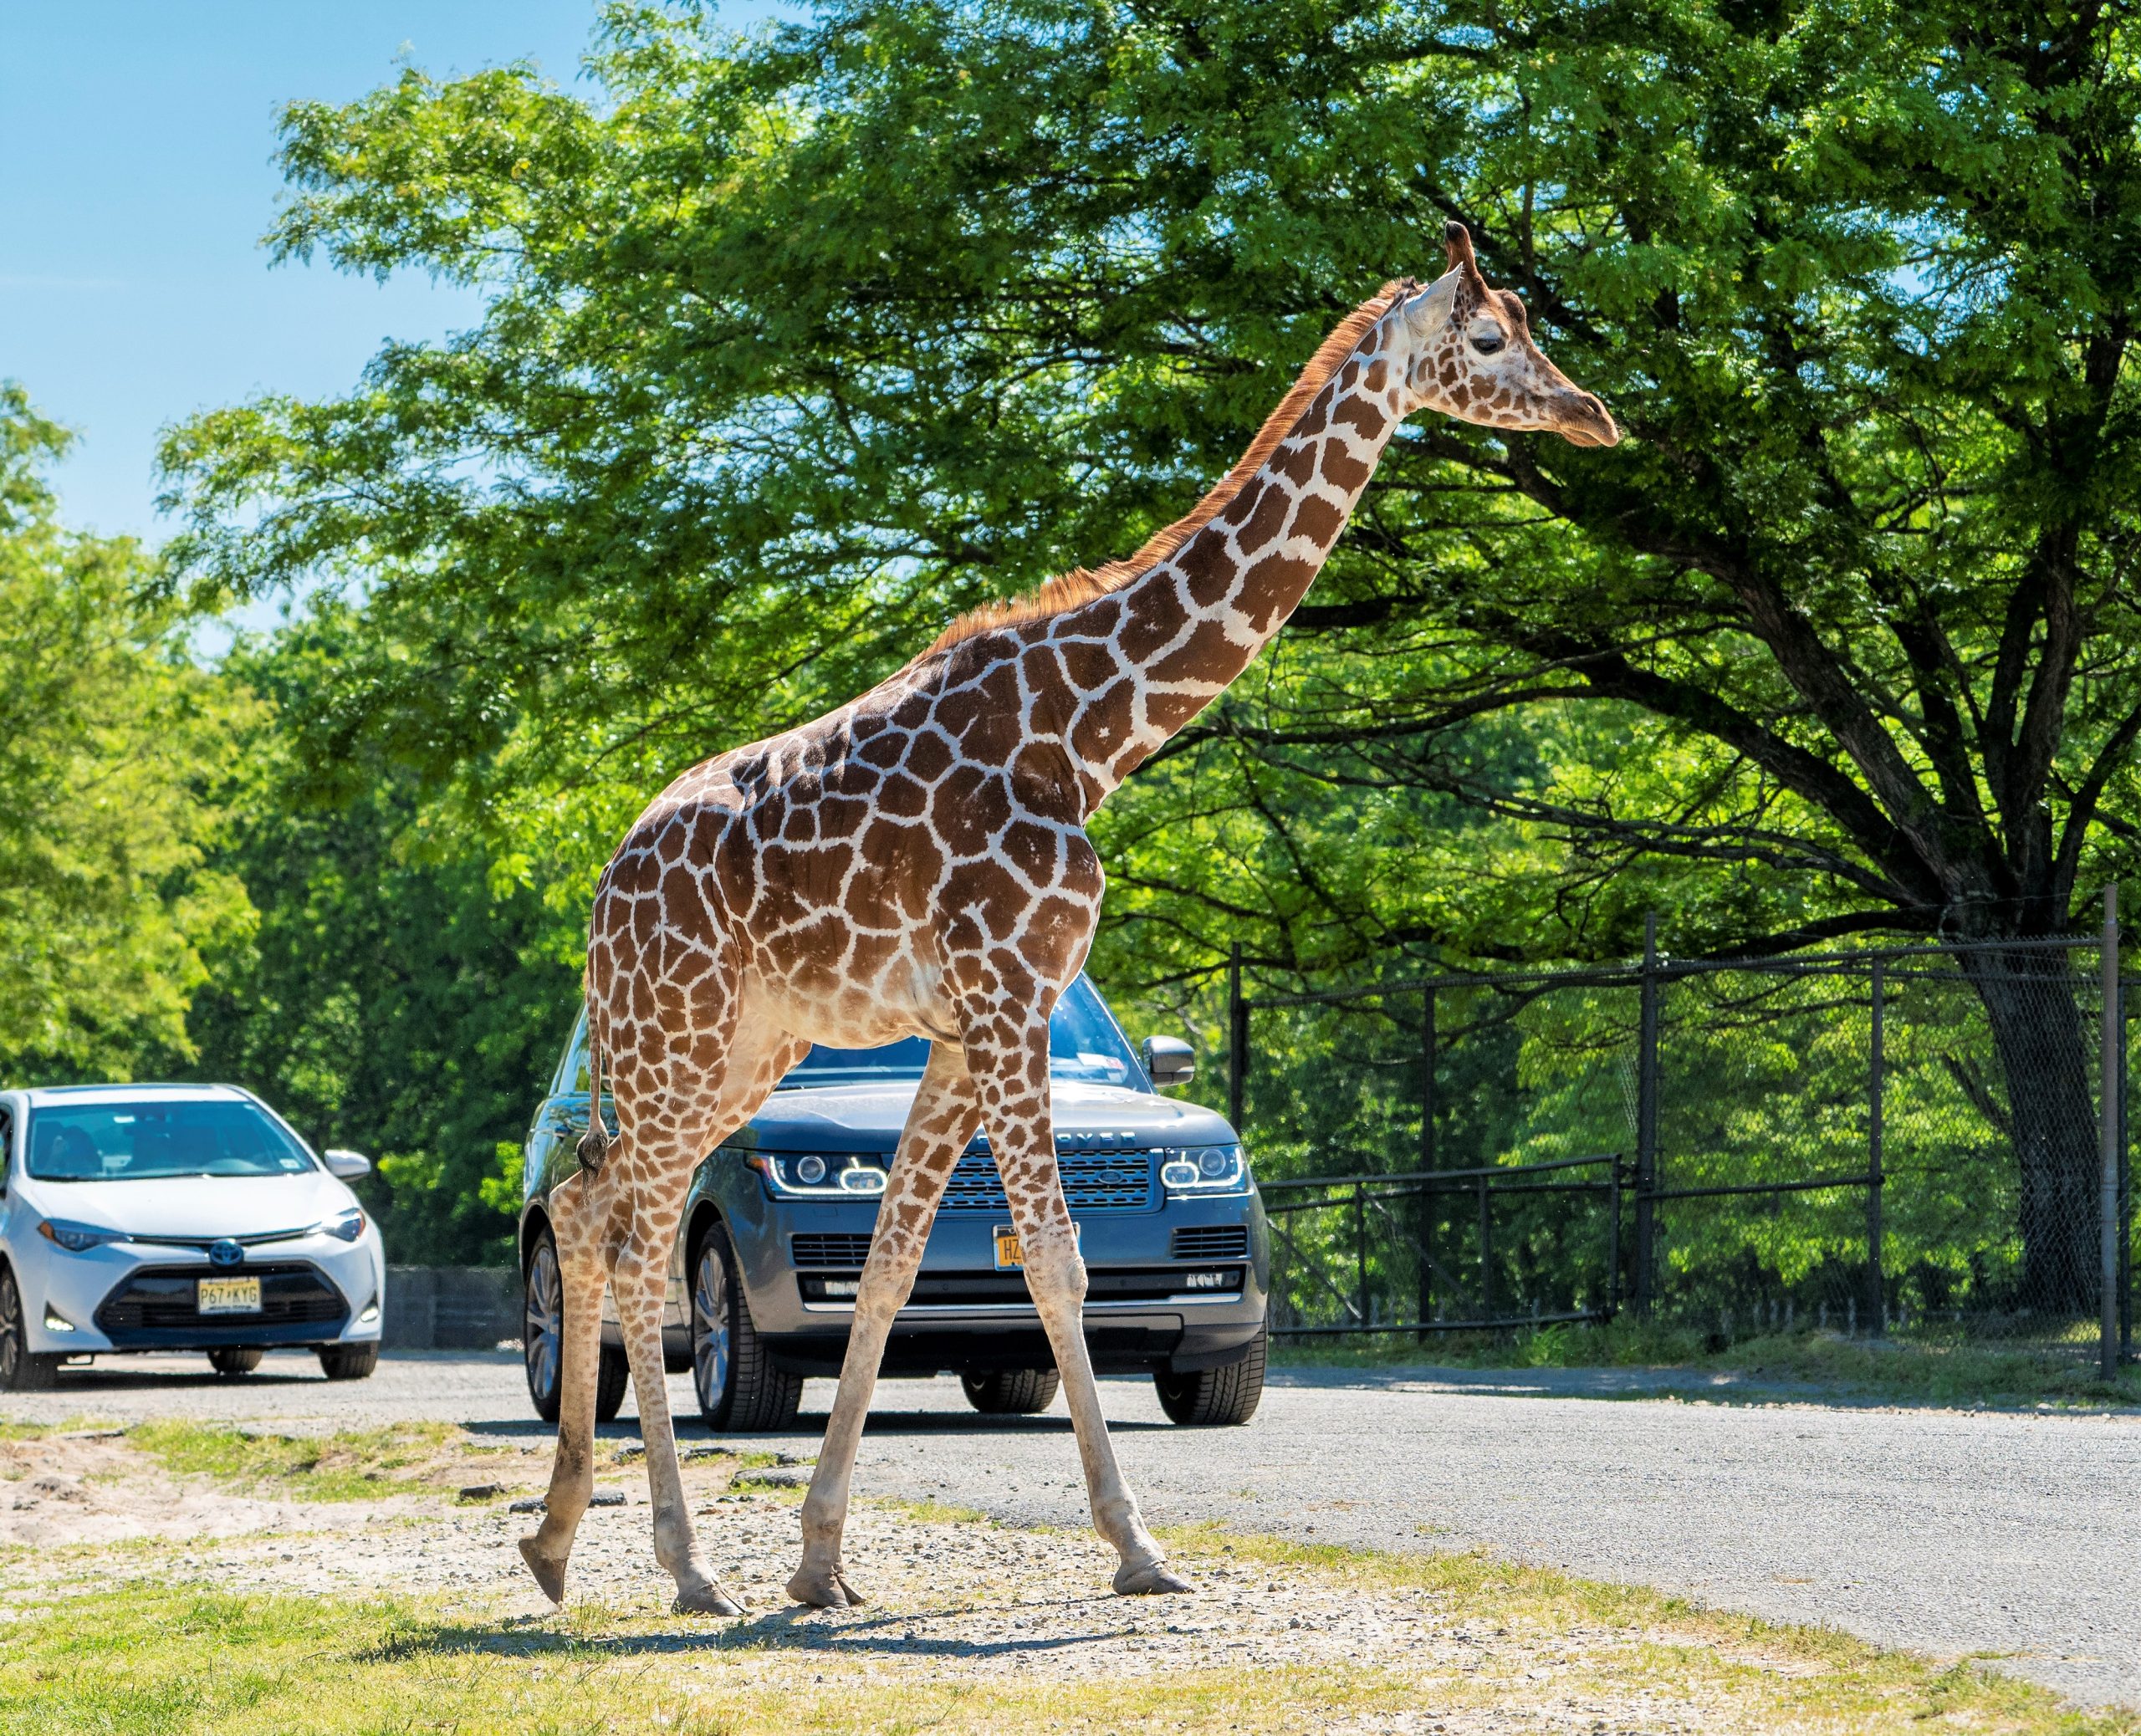 Six Flags Great Adventure Safari - Giraffe & SUVs